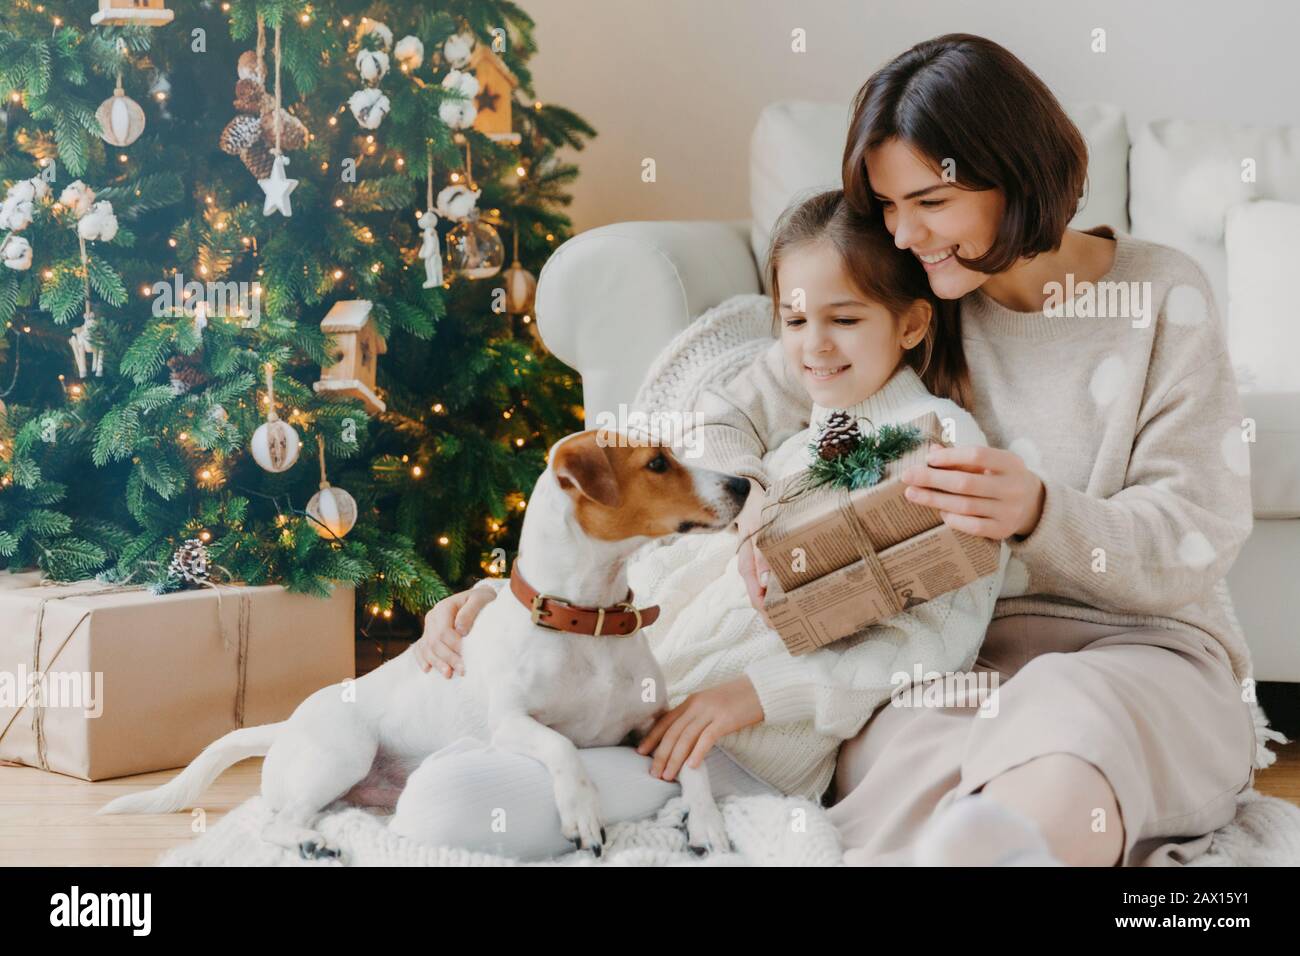 Une jeune femme heureuse embrasse sa petite fille, présente Noël, attend pour des vacances d'hiver, jouer avec le chiot pedigree, poser au sol près de la décoration Banque D'Images